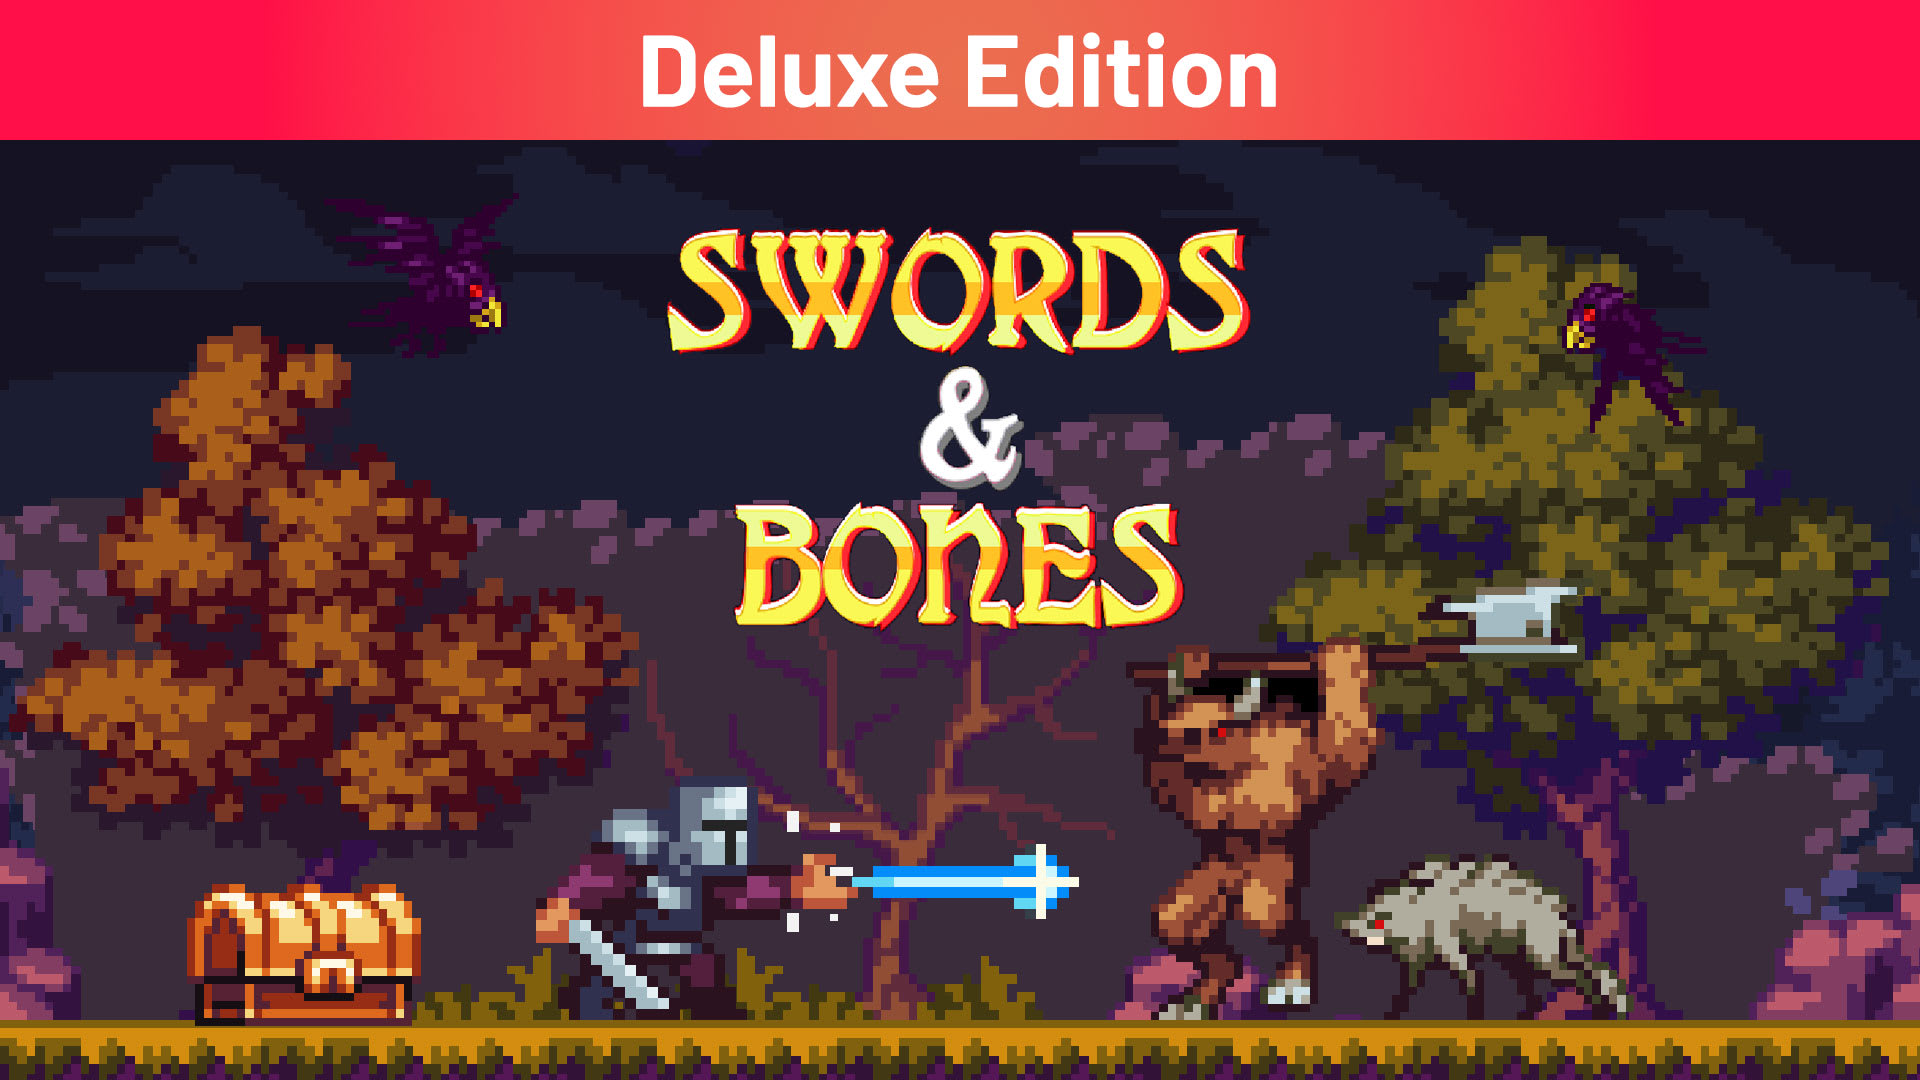 Swords & Bones Deluxe Edition